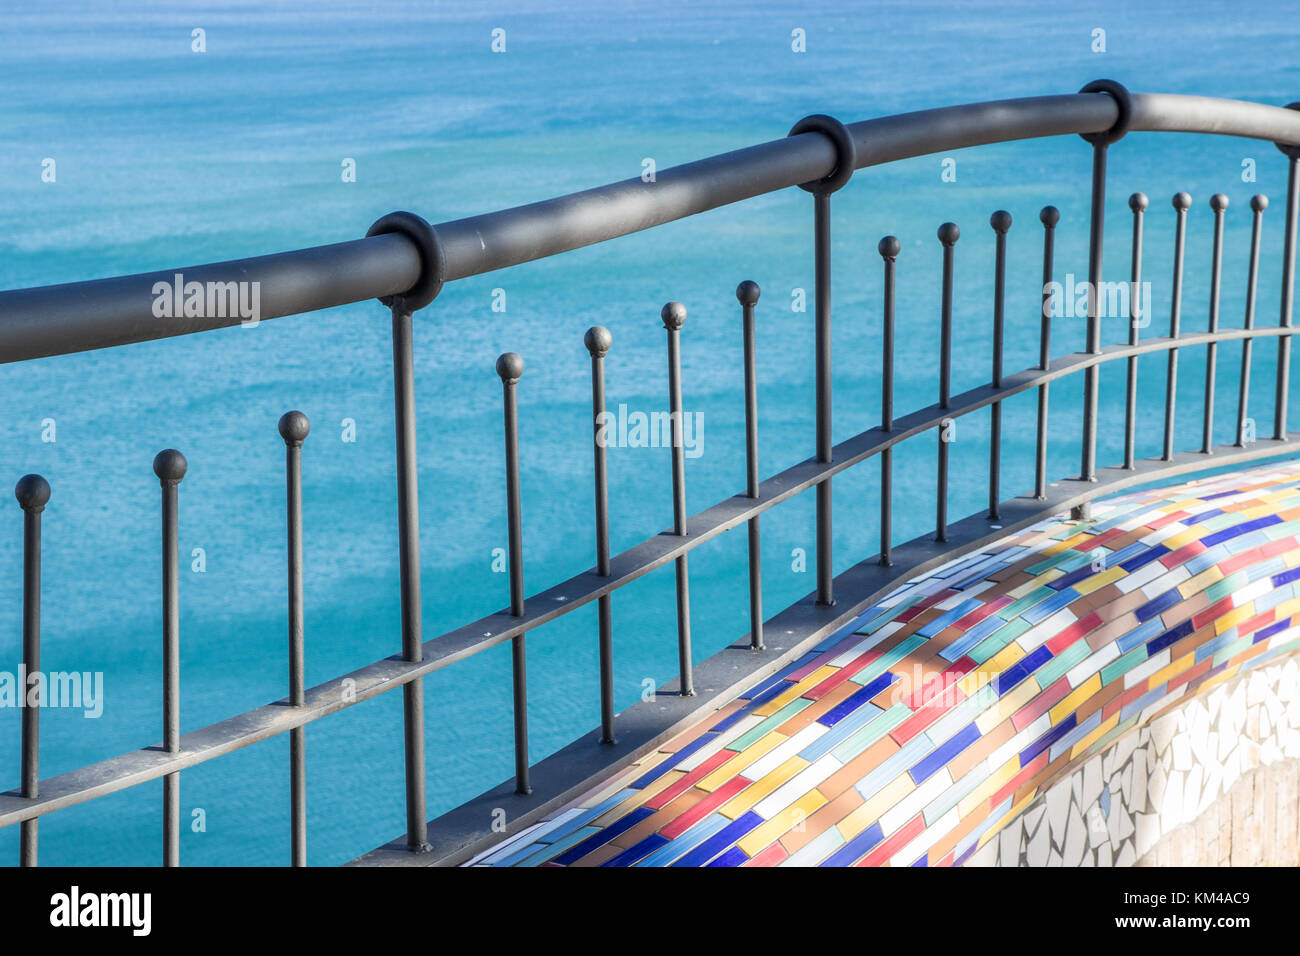 Villa comunale di Vietri sul mare (Costiera Amalfitana): ceramiche colorate parete e il cancello di ferro, il mare blu in background Foto Stock